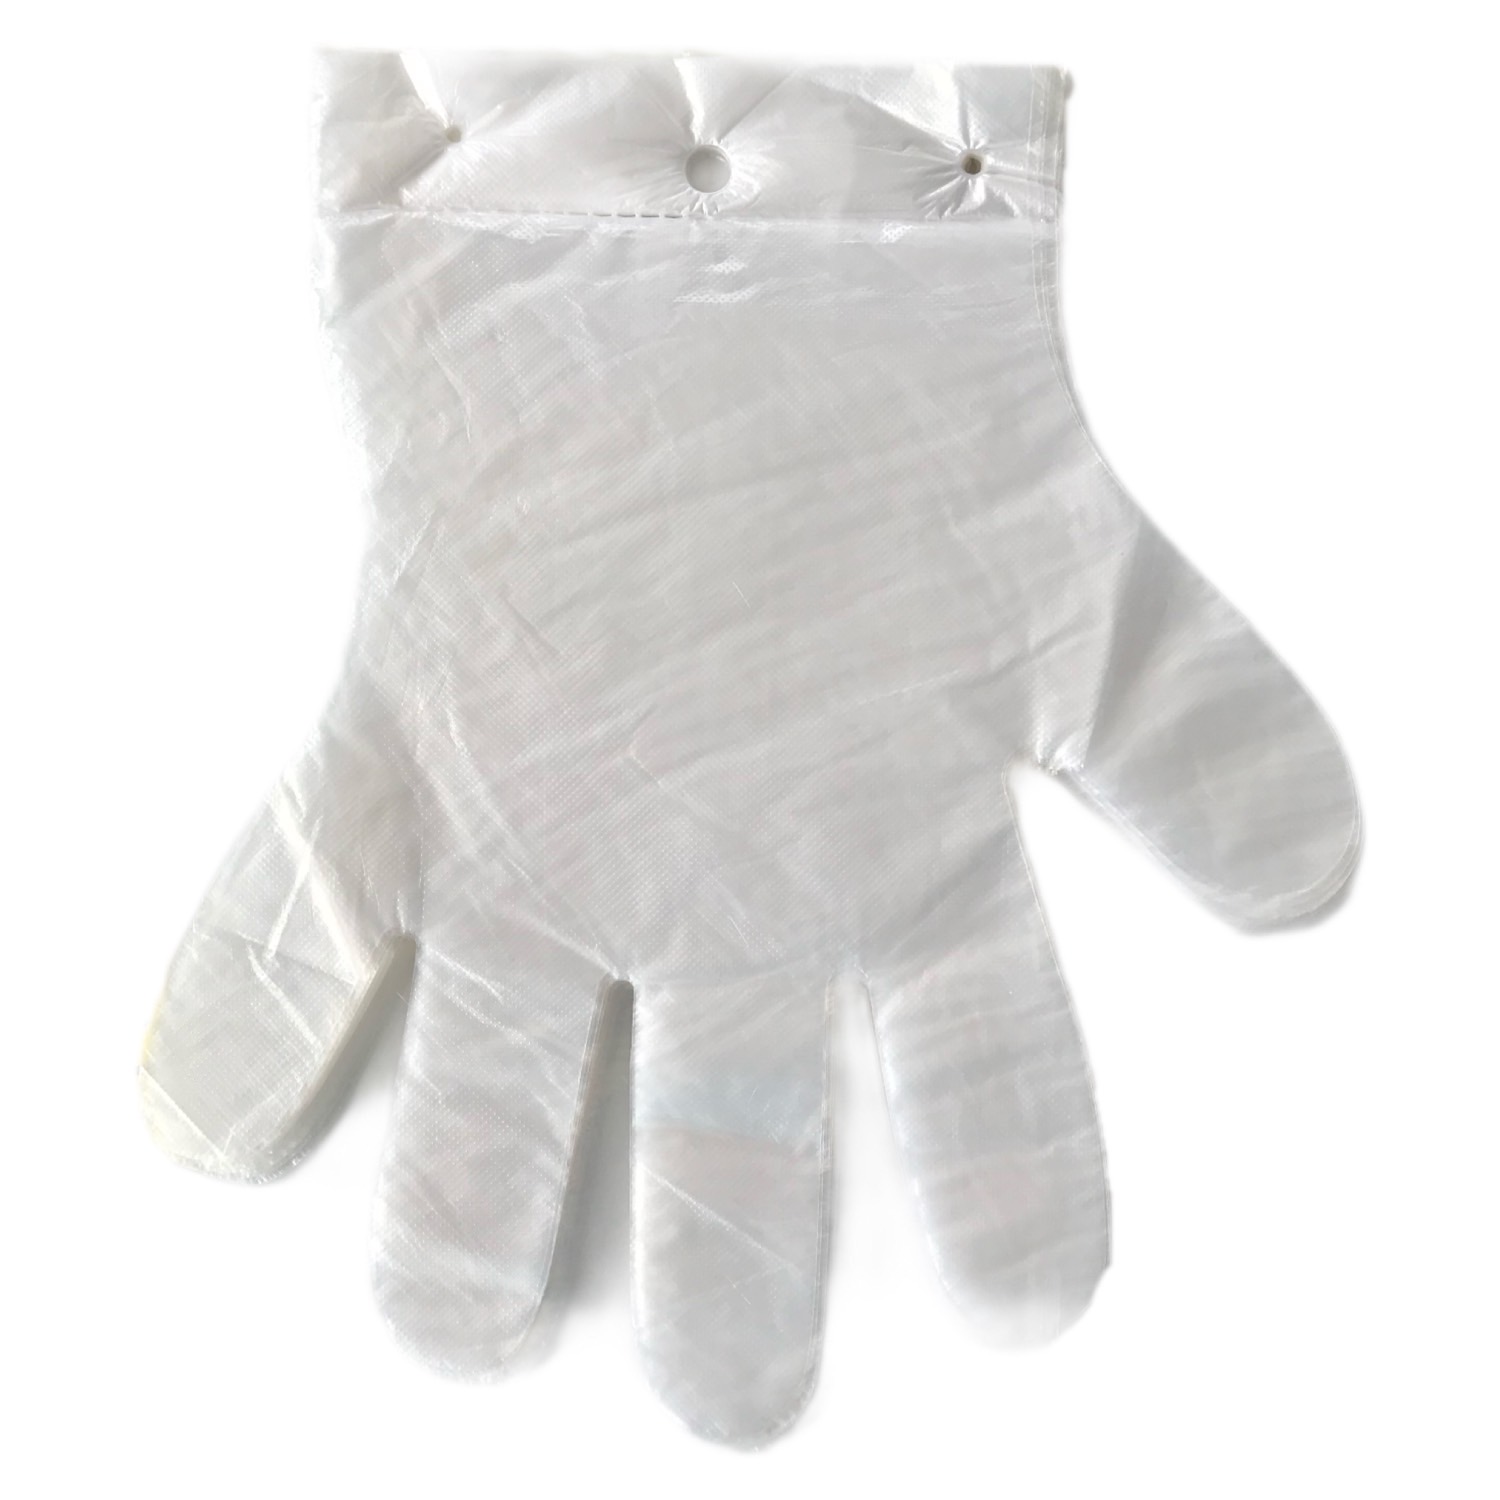 100 ks / balení PE plastové blokované jednorázové rukavice